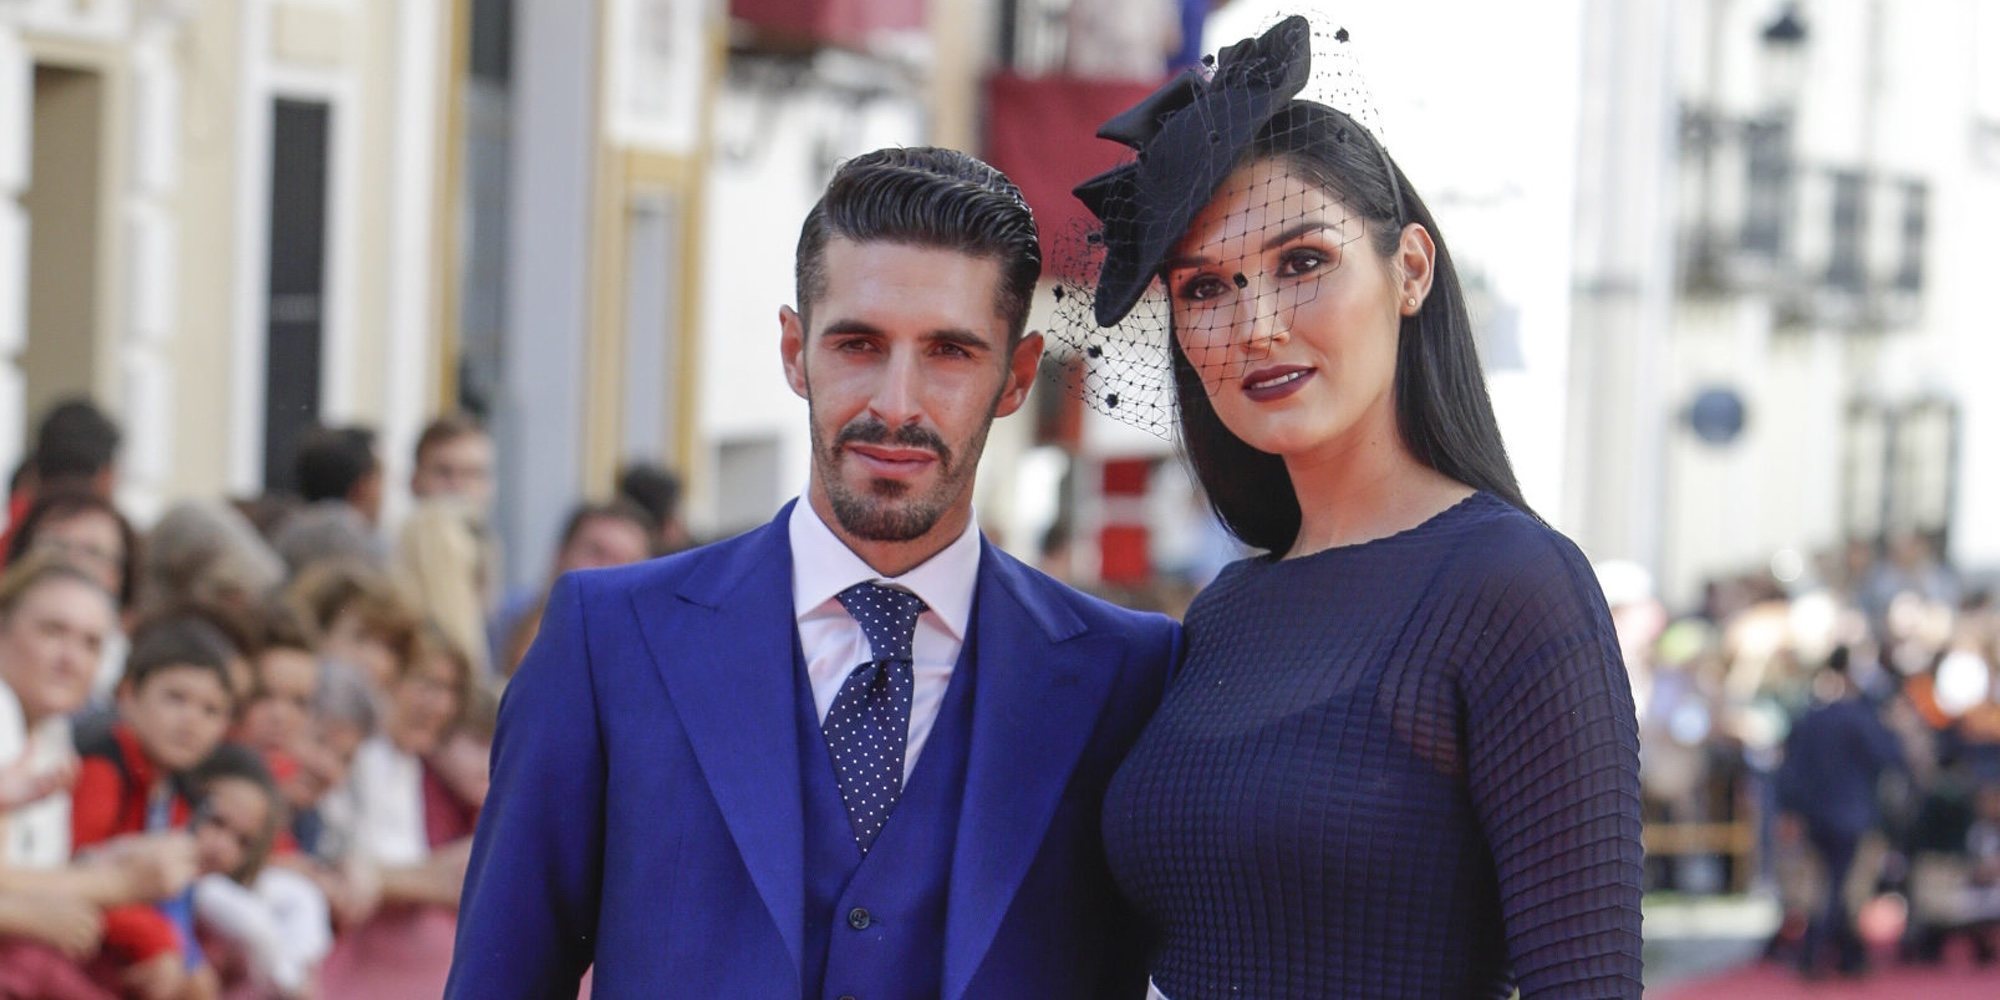 El torero Alejandro Talavante y la modelo Jessica Ramírez se divorcian tras 5 años de matrimonio